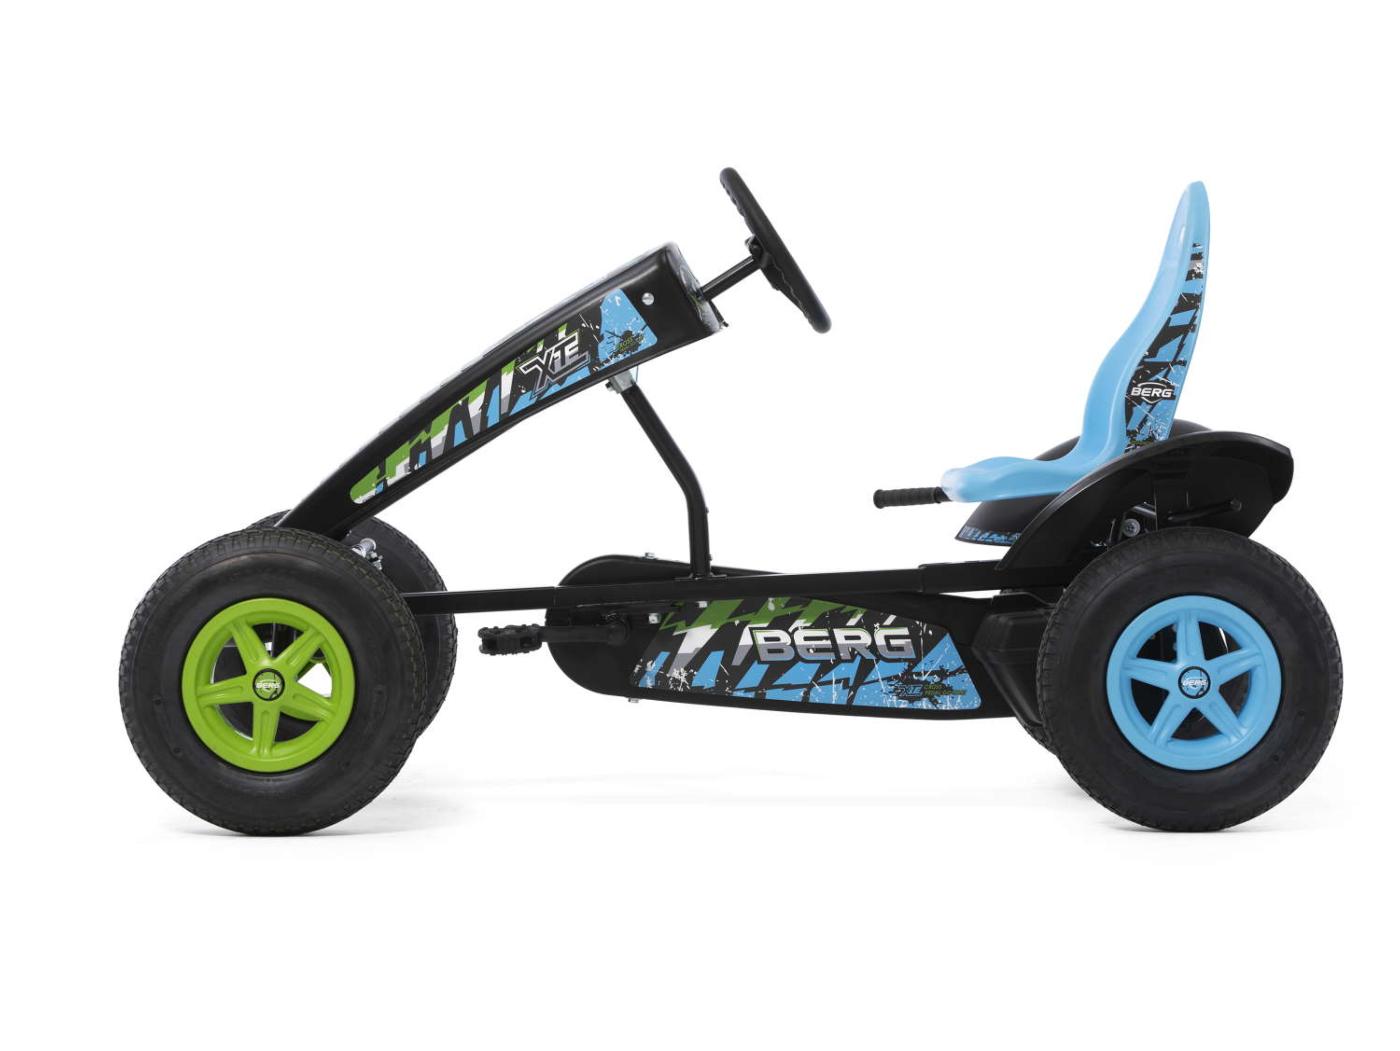 Kart de pedales eléctrico BERG X-ite E-BFR